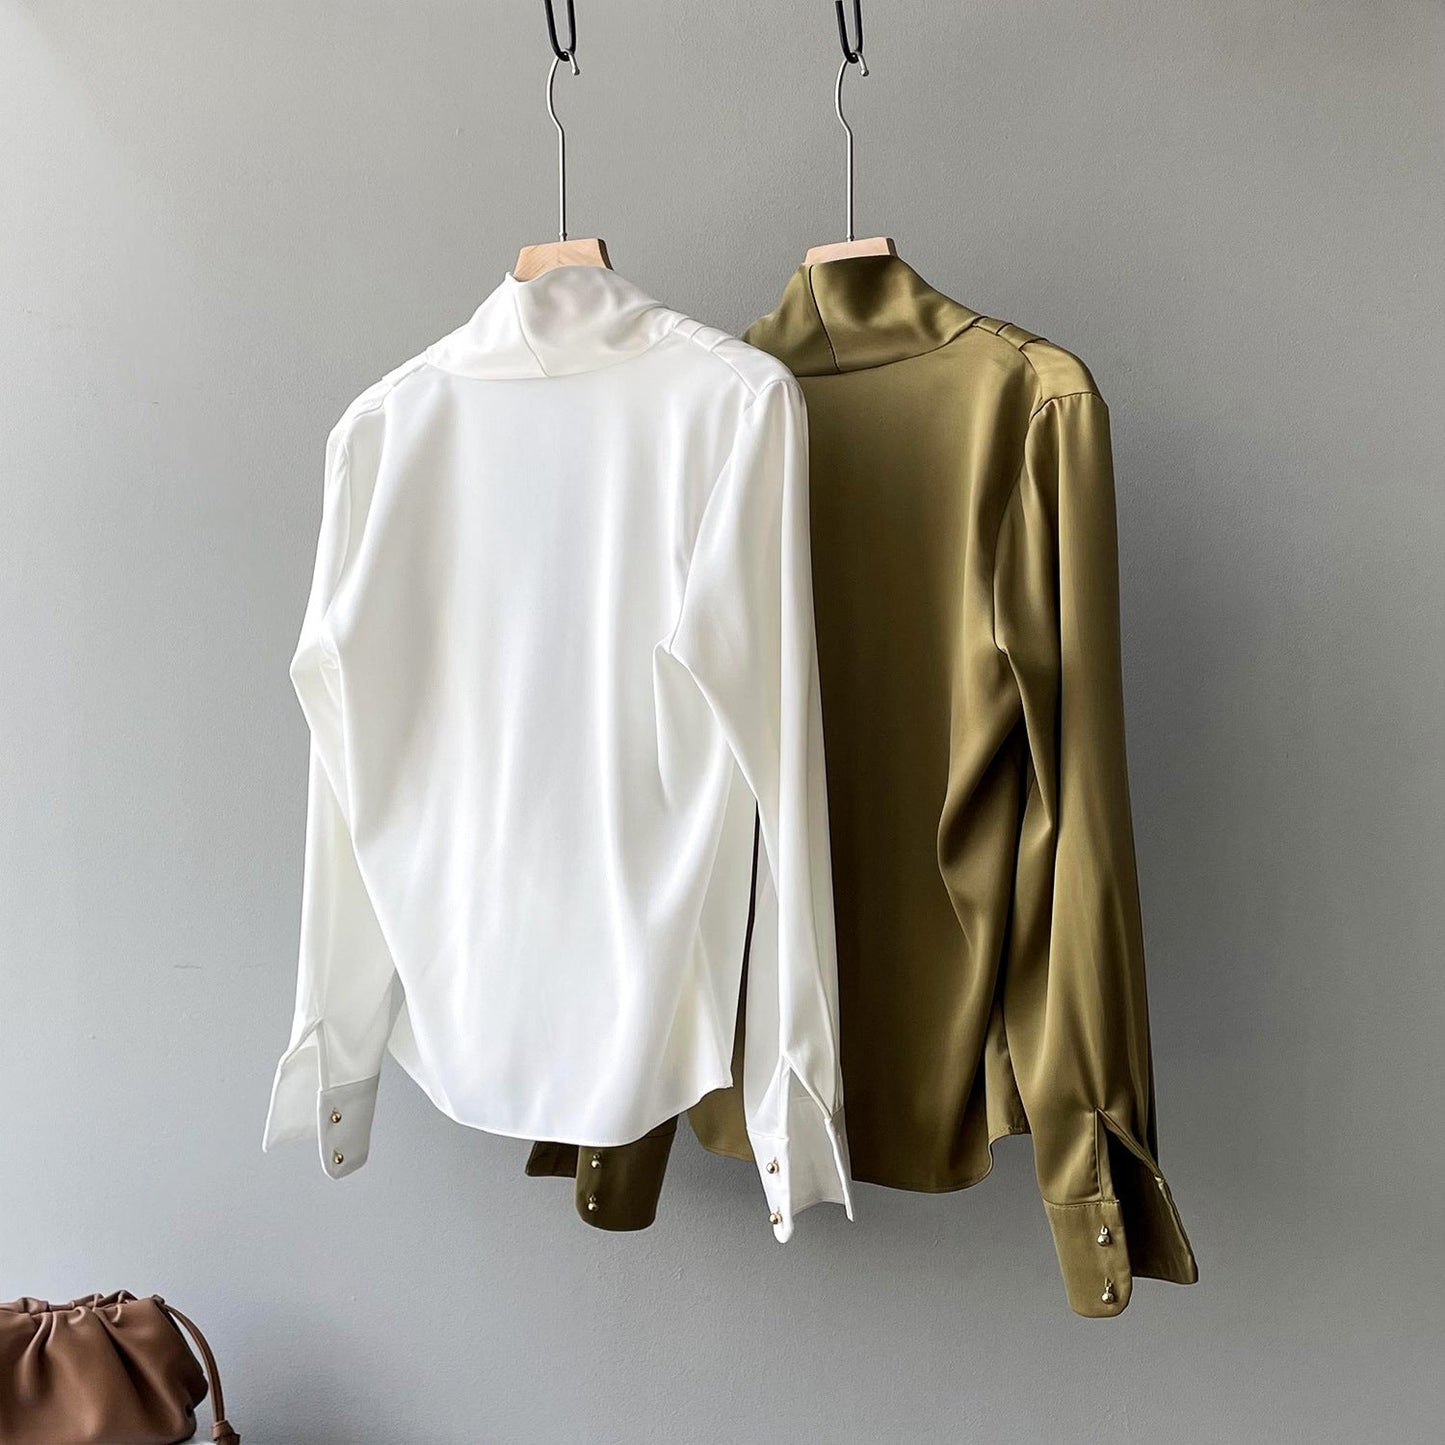 Elegant Satin Long Sleeves Office Lady Shirts-Shirts & Tops-Free Shipping at meselling99